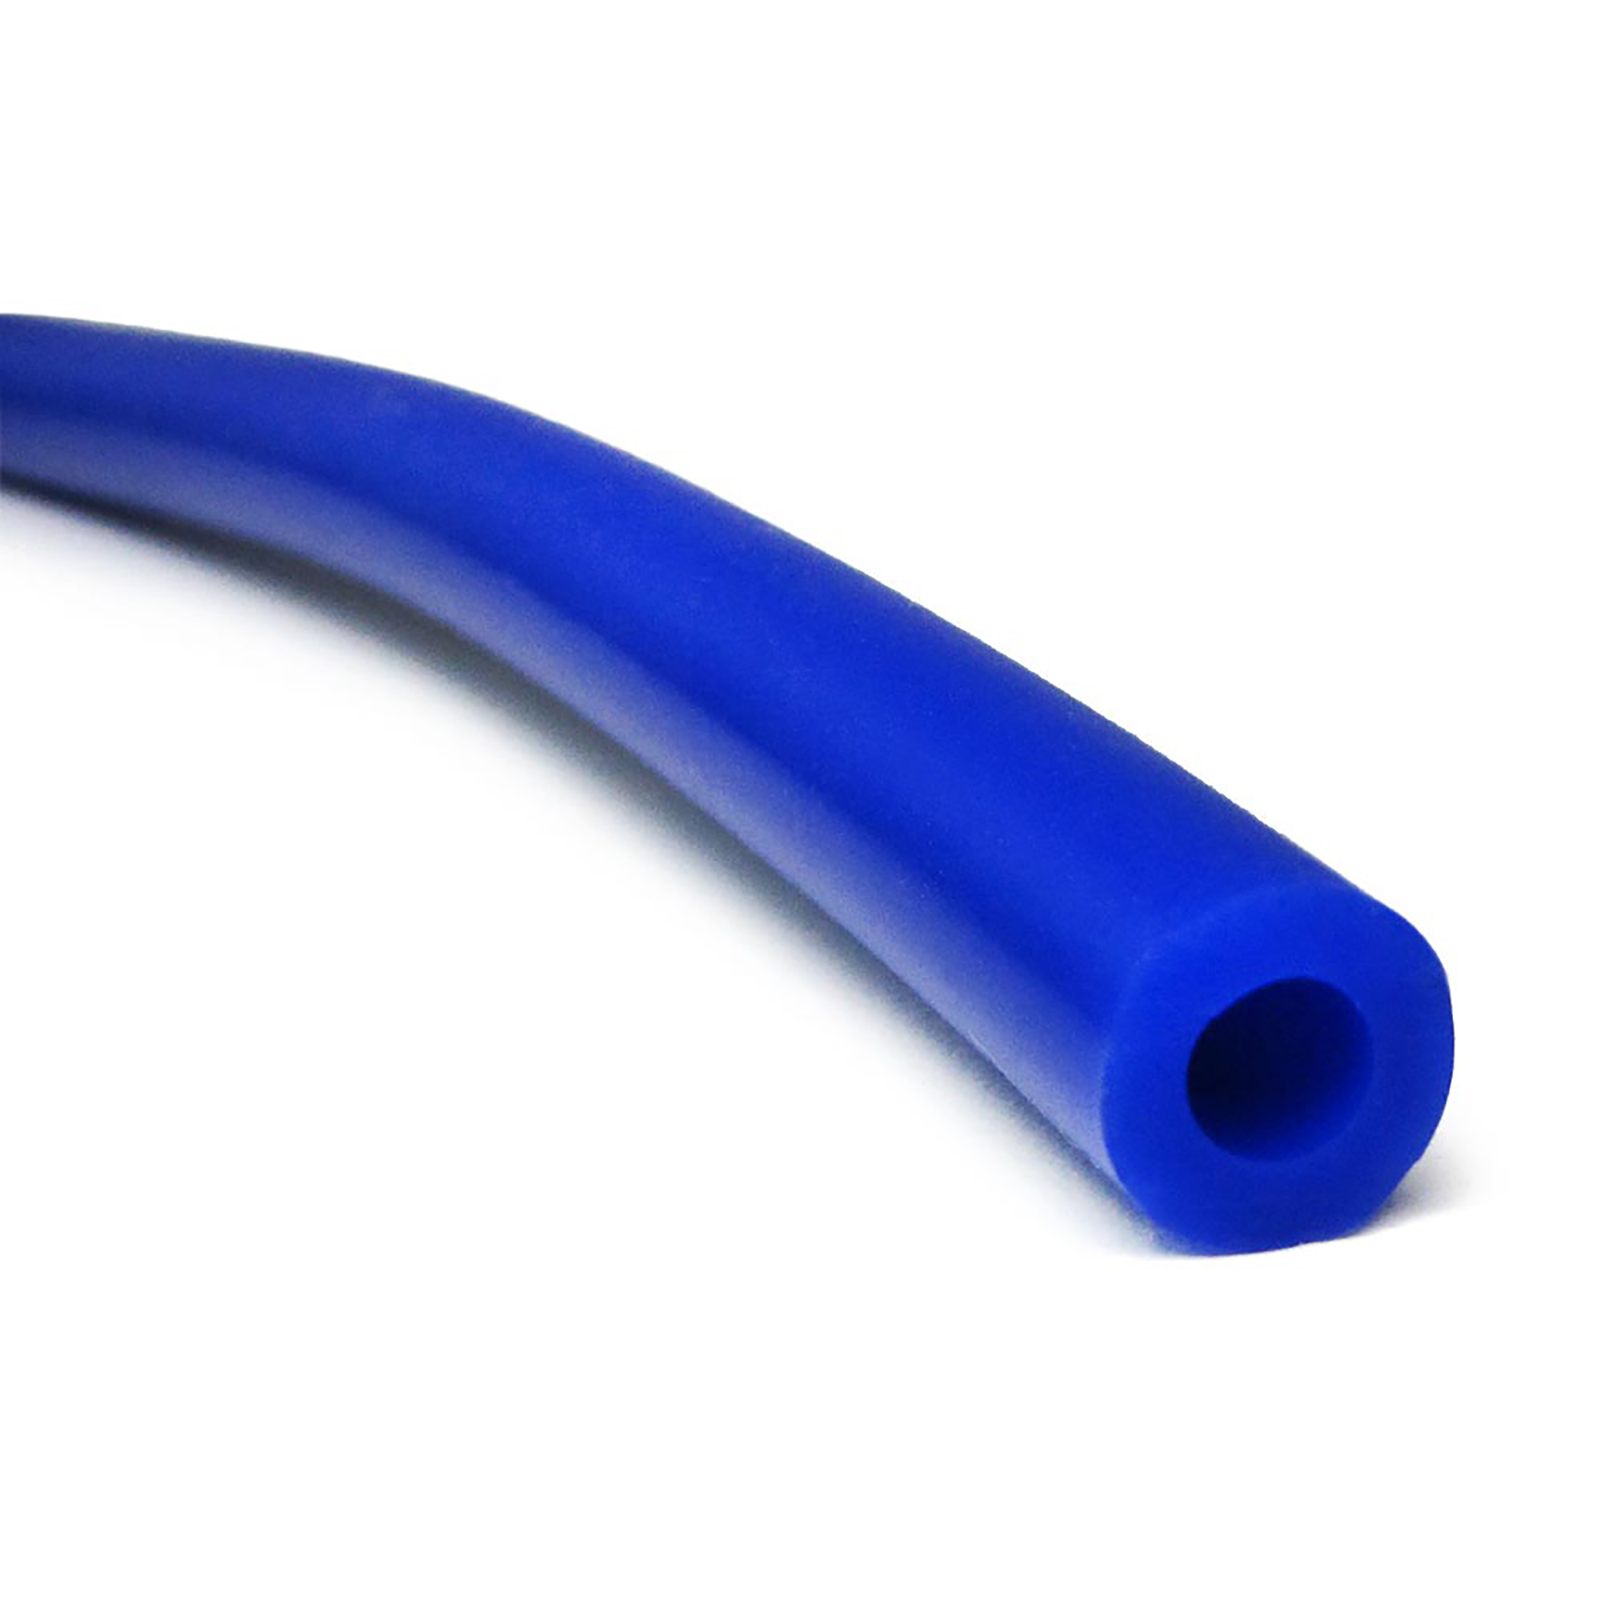 Blauer Silikon Kühlerschlauch mit einem Innendurchmesser von 35 mm und  einer Wandstärke von 4 mm. Fixlänge 100 cm.